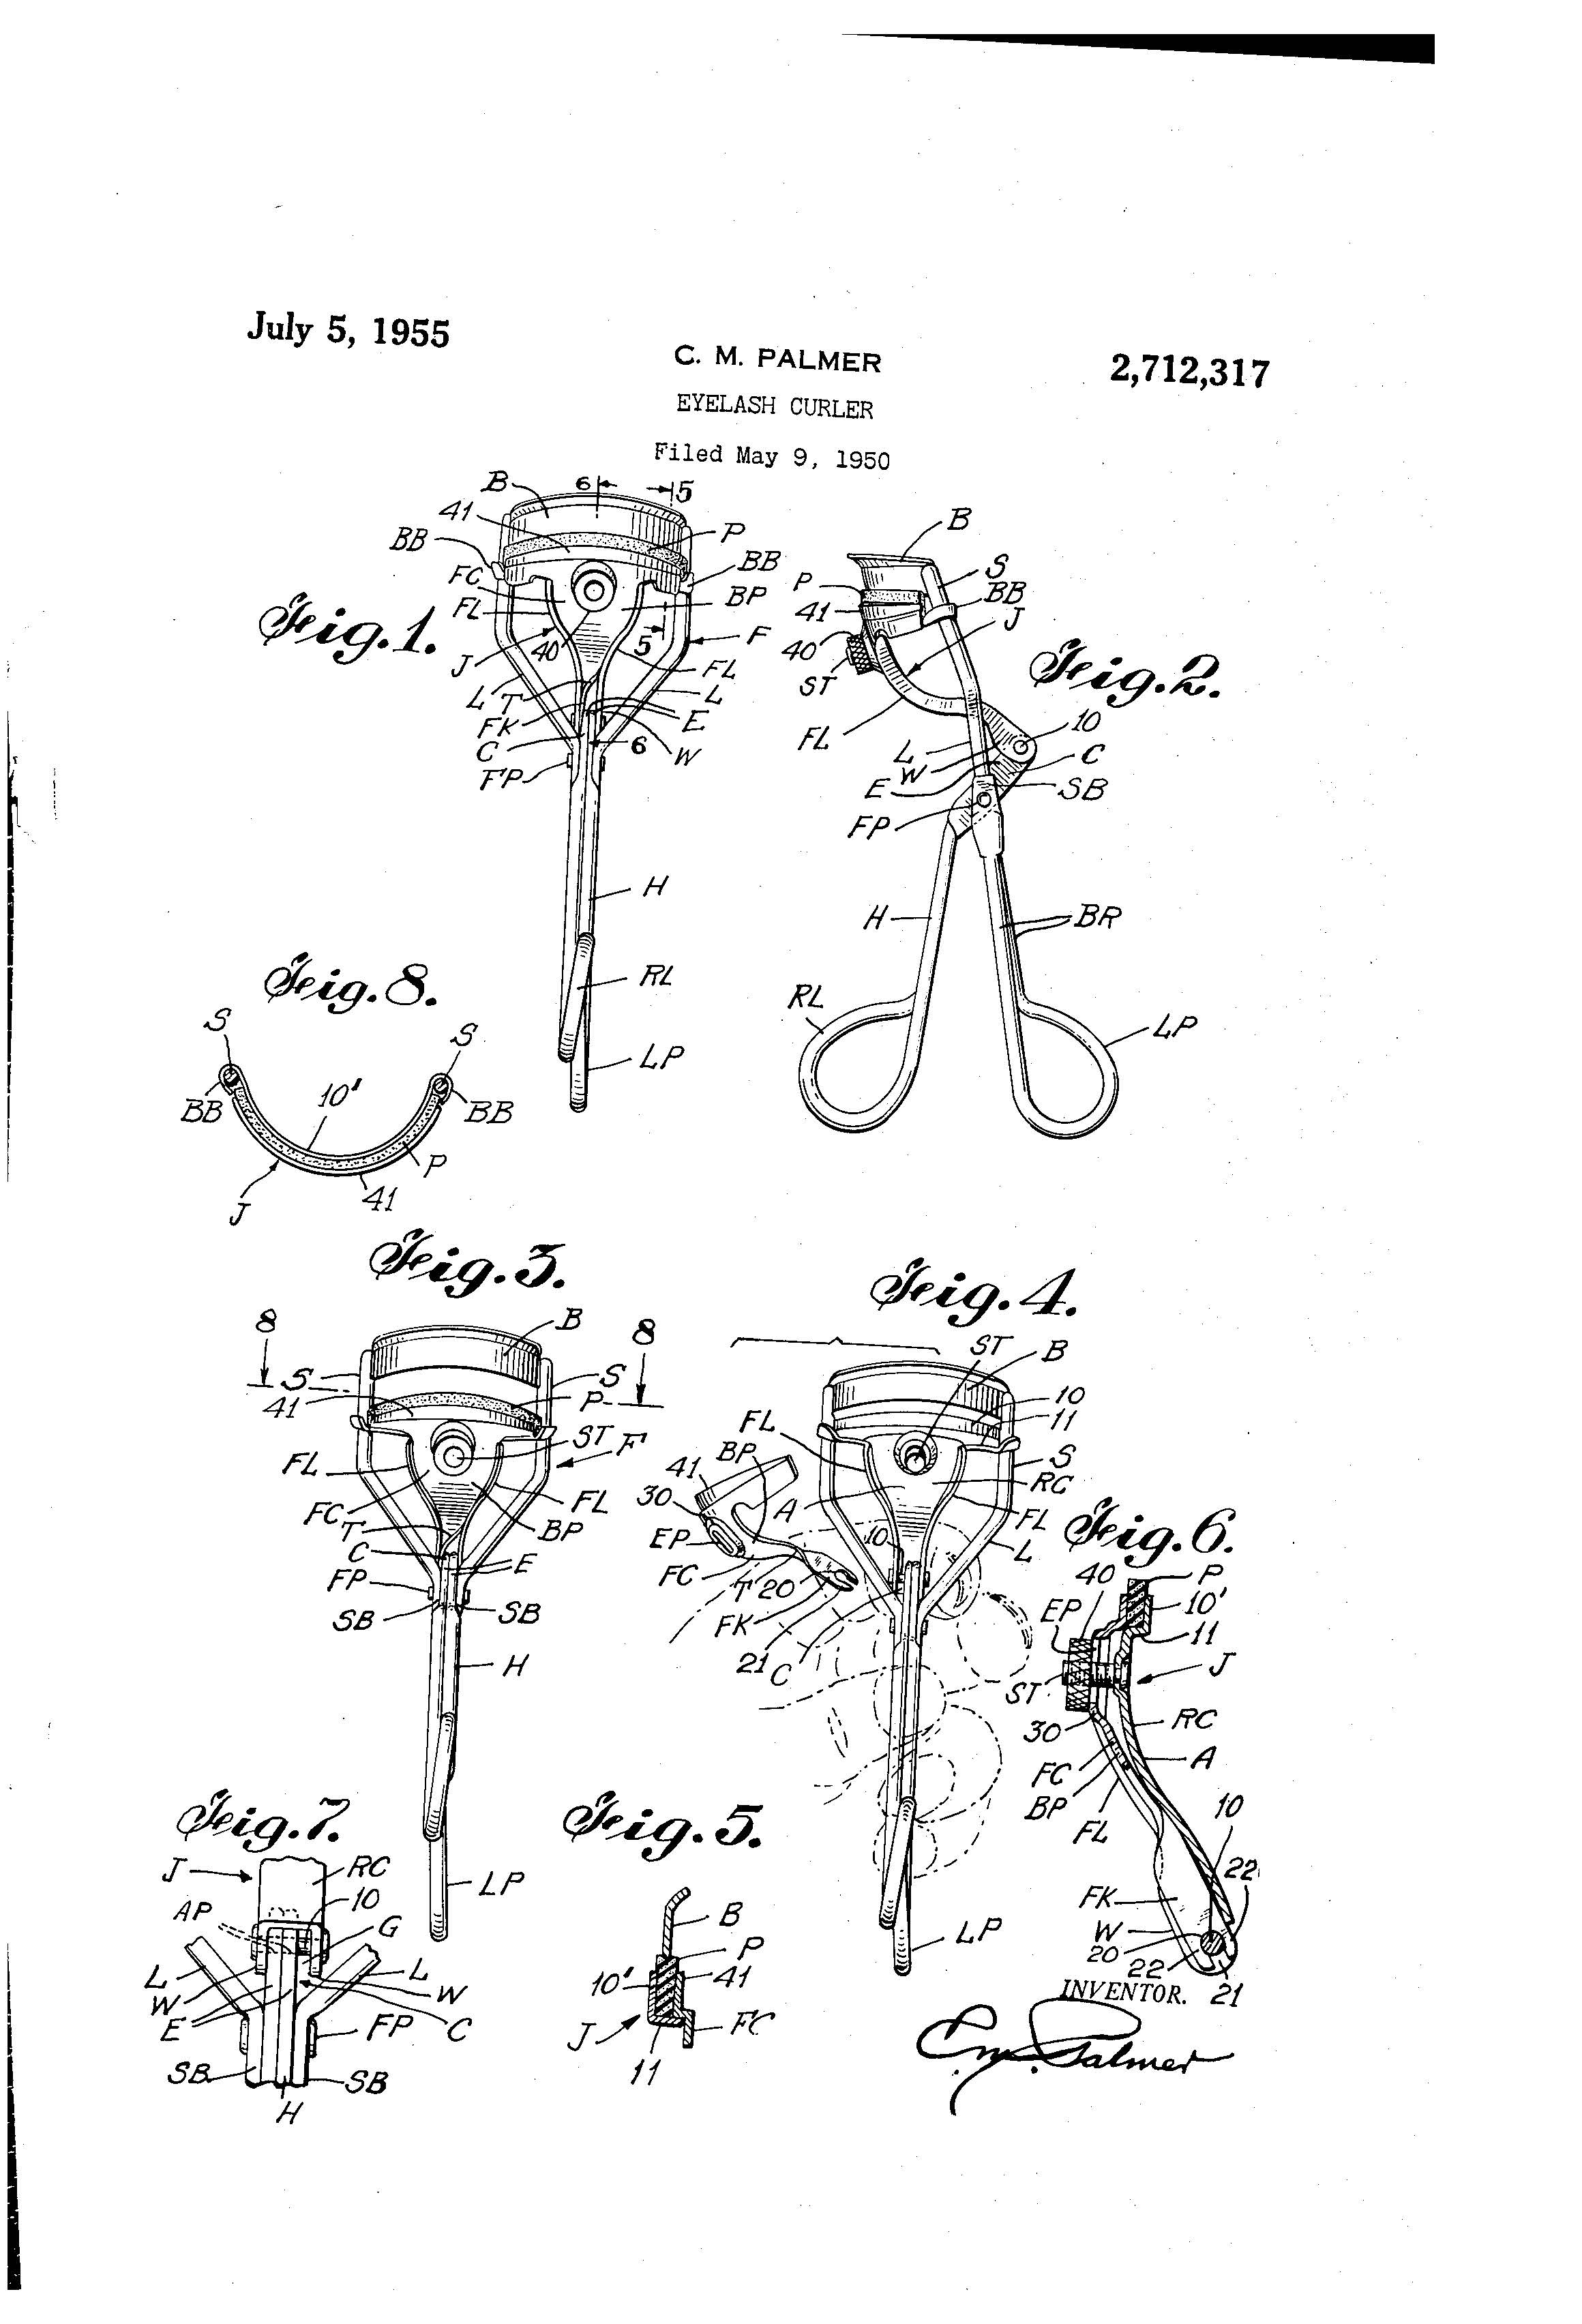 Eyelash Curler Patent